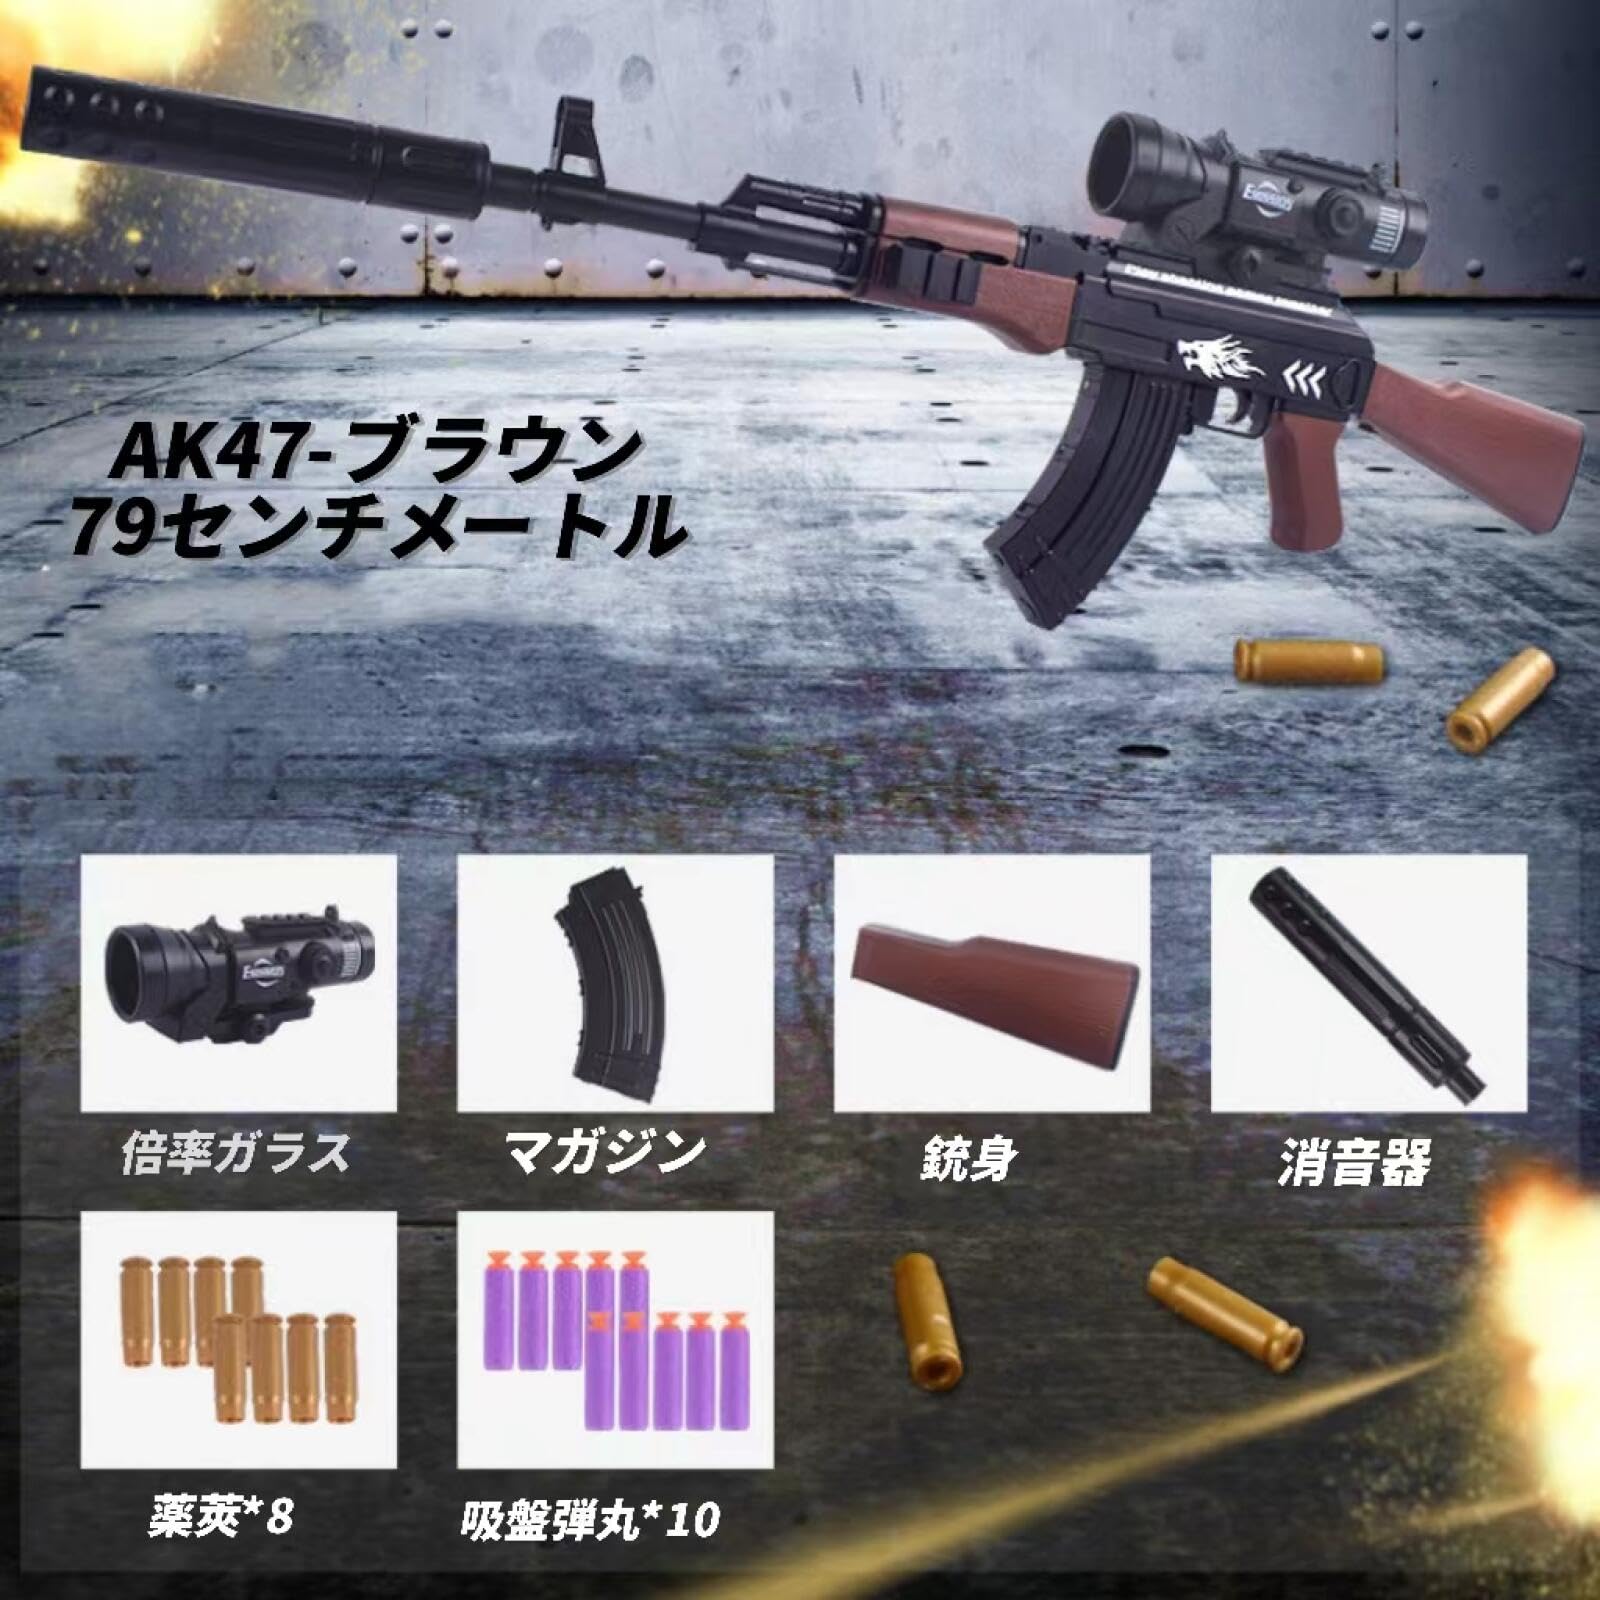 手動シェル排出式AK47エアガン-プラスチック弾幕対応、トイガンセット付き、おもちゃ用スポンジ弾排莢式男の子向け軟弾銃